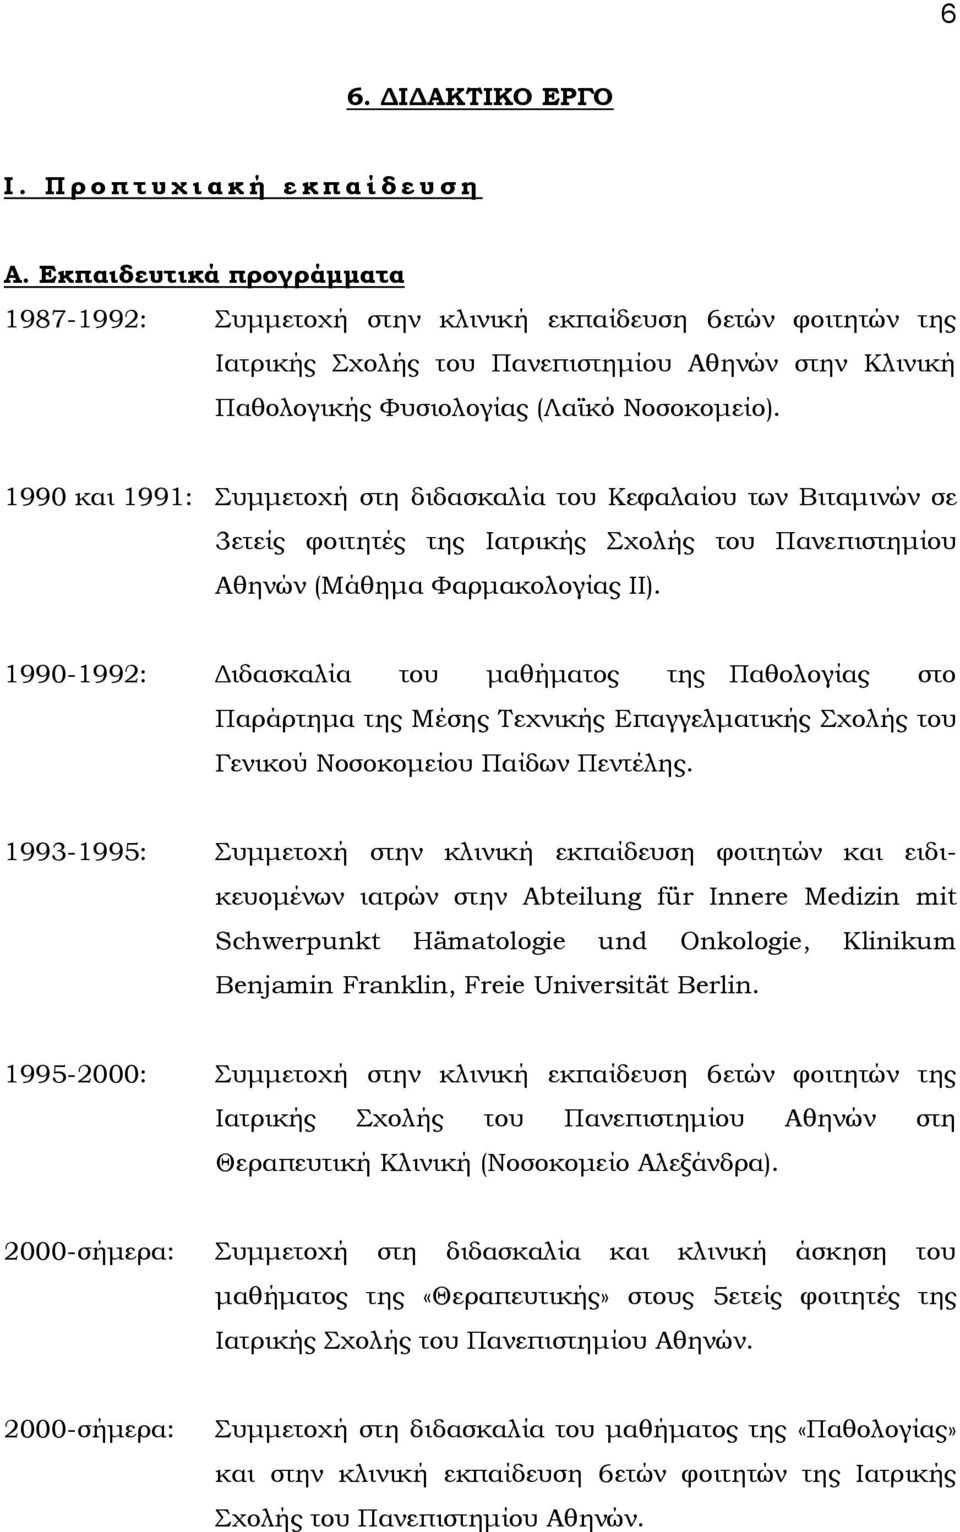 1990 και 1991: υμμετοχή στη διδασκαλία του Κεφαλαίου των Βιταμινών σε 3ετείς φοιτητές της Ιατρικής χολής του Πανεπιστημίου Αθηνών (Μάθημα Υαρμακολογίας ΙΙ).